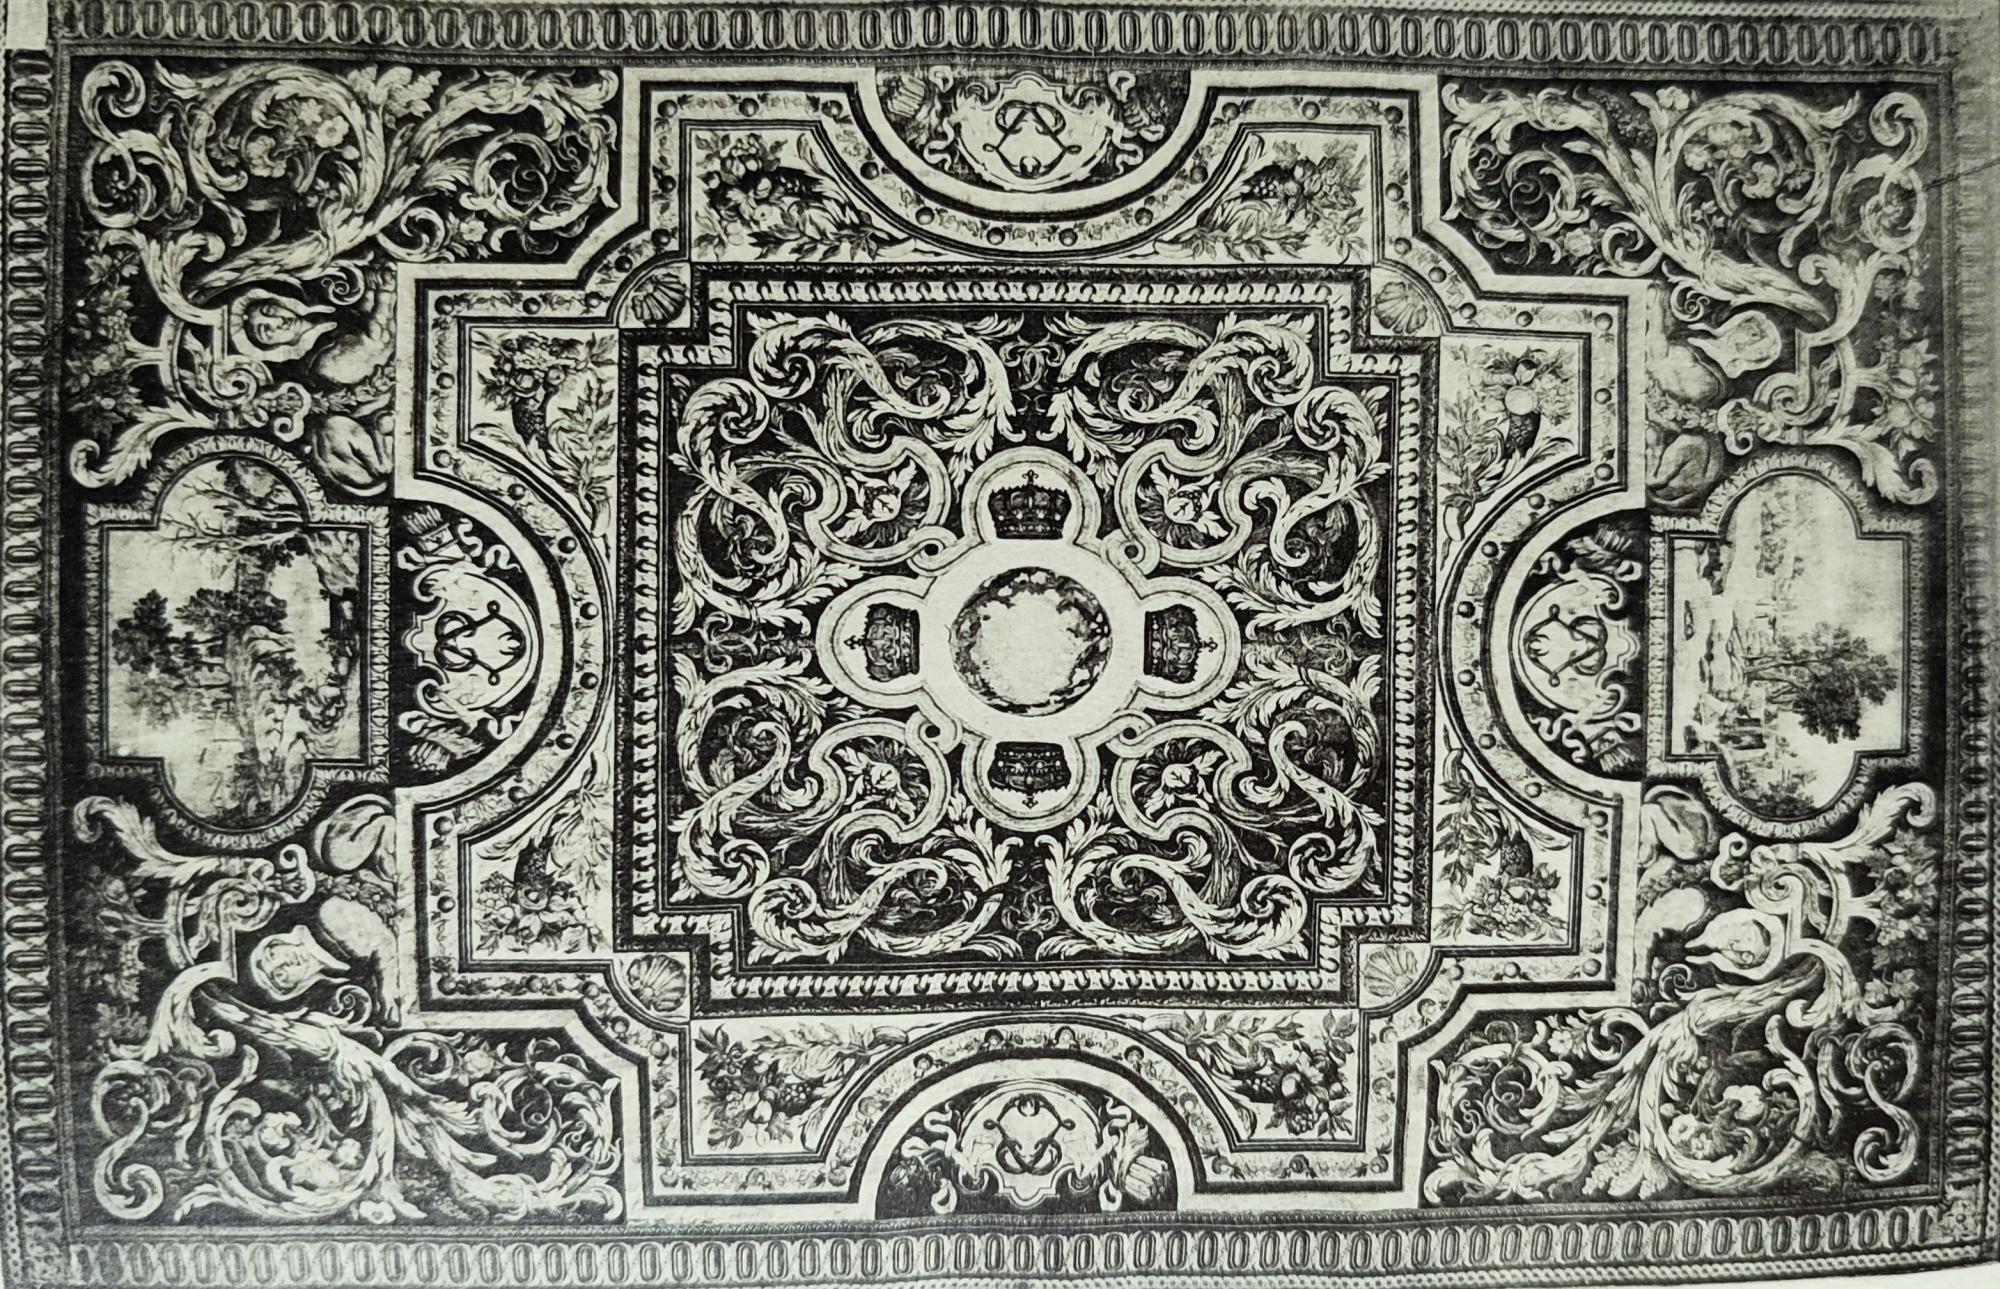 Histoire du tapis - Galerie parisienne spécialisée dans la vente de tapis anciens d'Orient